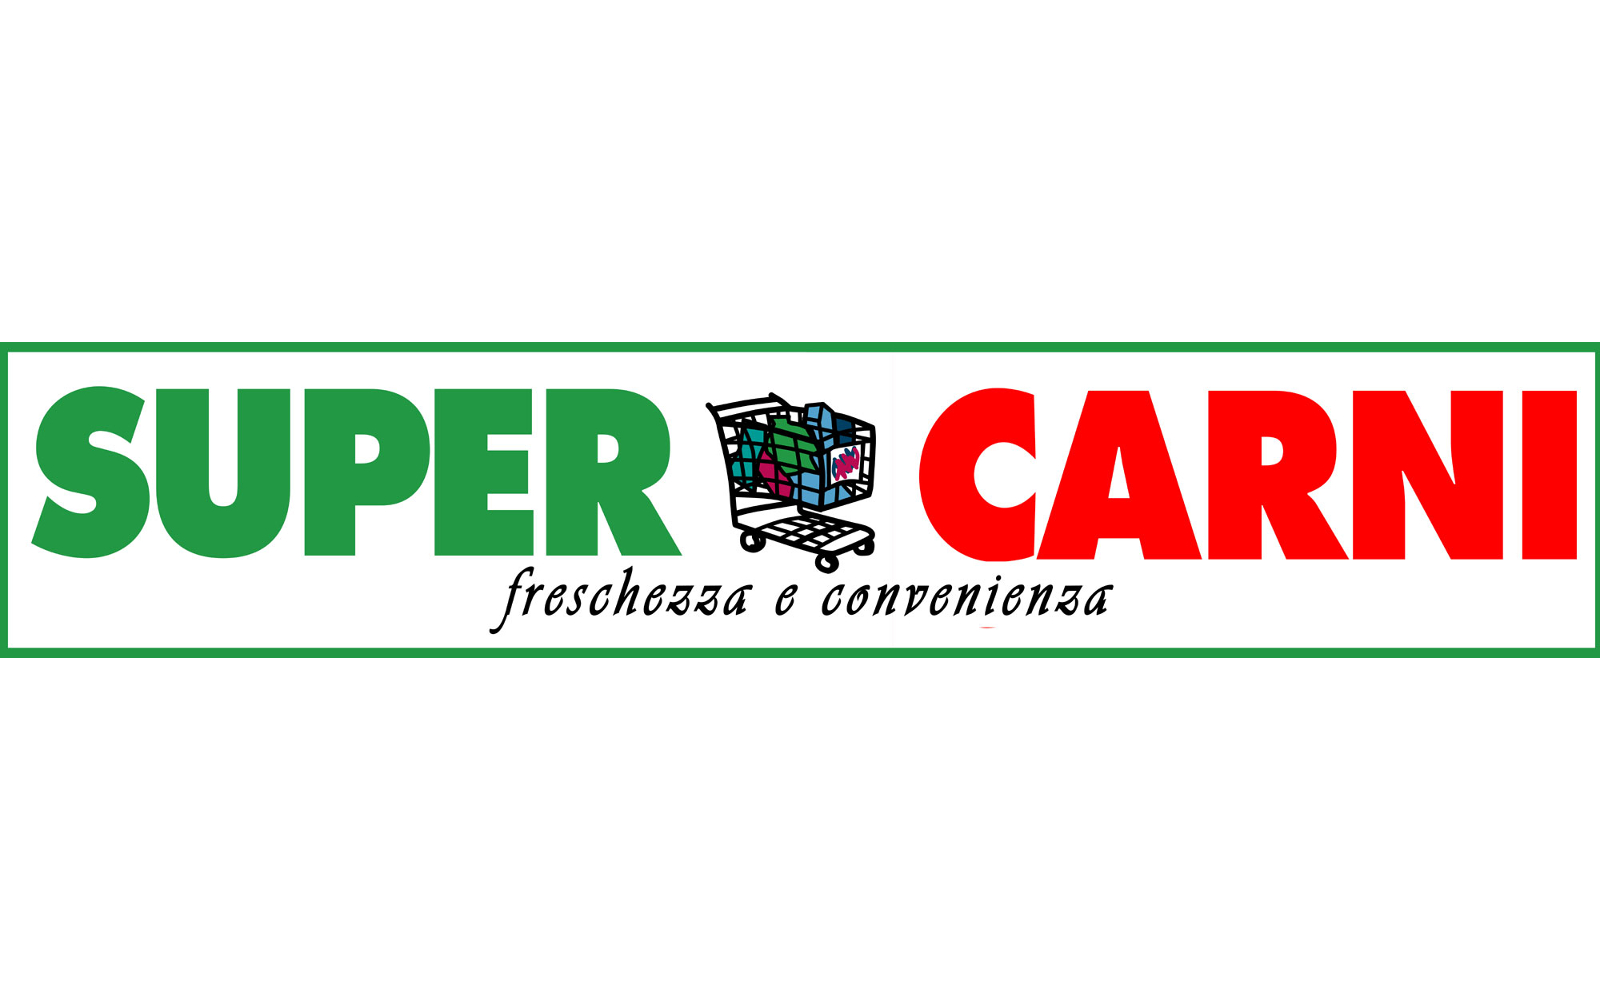 Super Carni - Via Carulli, 142